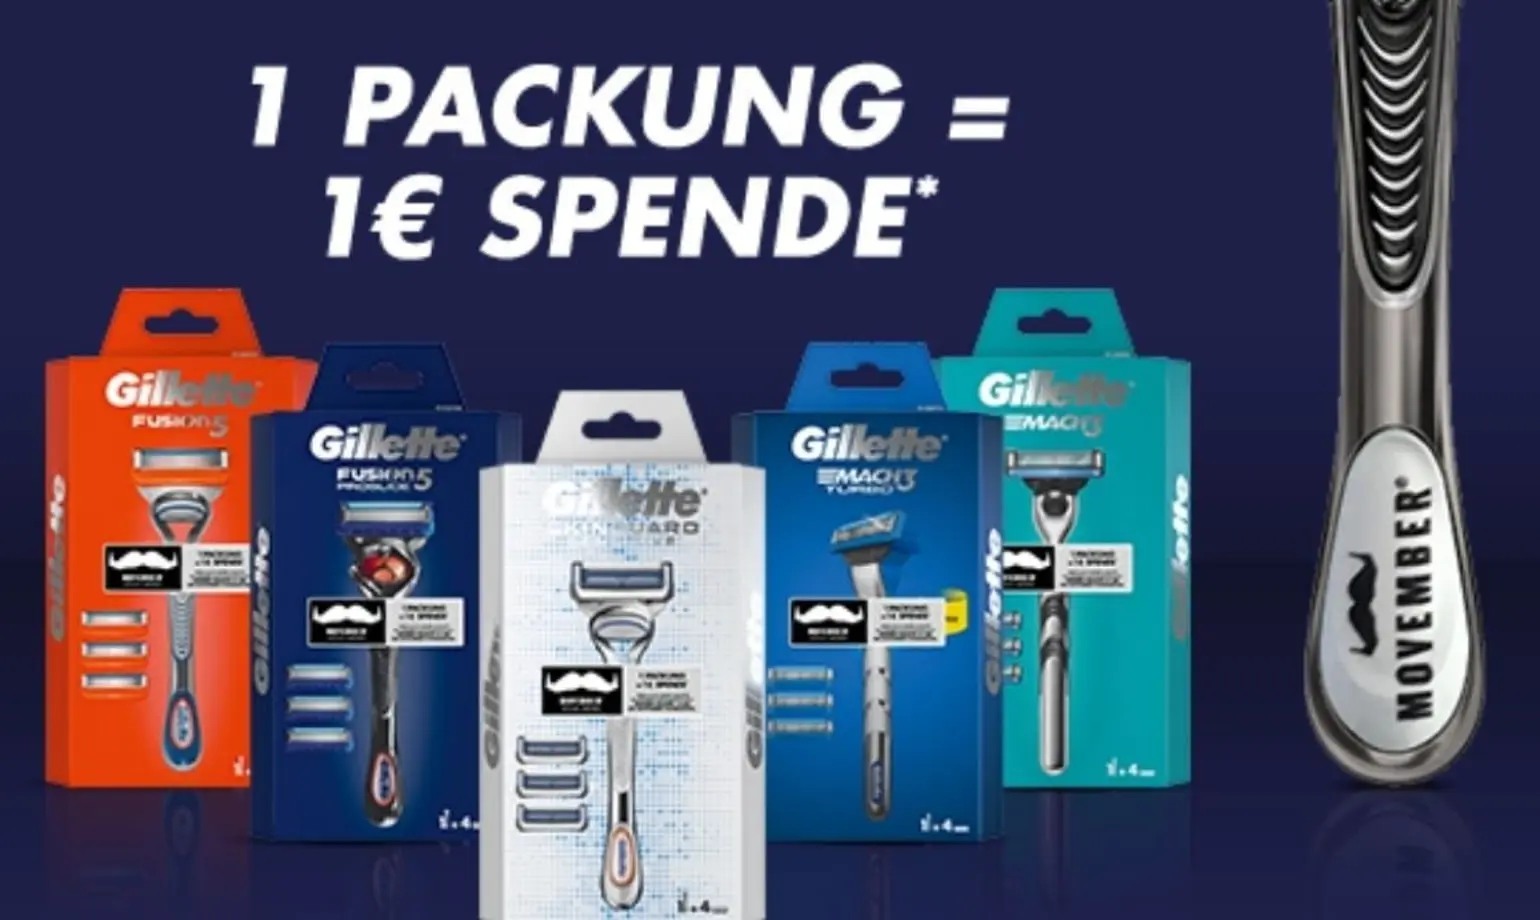 Gillette spendet bei jedem Kauf von Gillette-Produkten 1 € an die Wohltätigkeitsorganisation